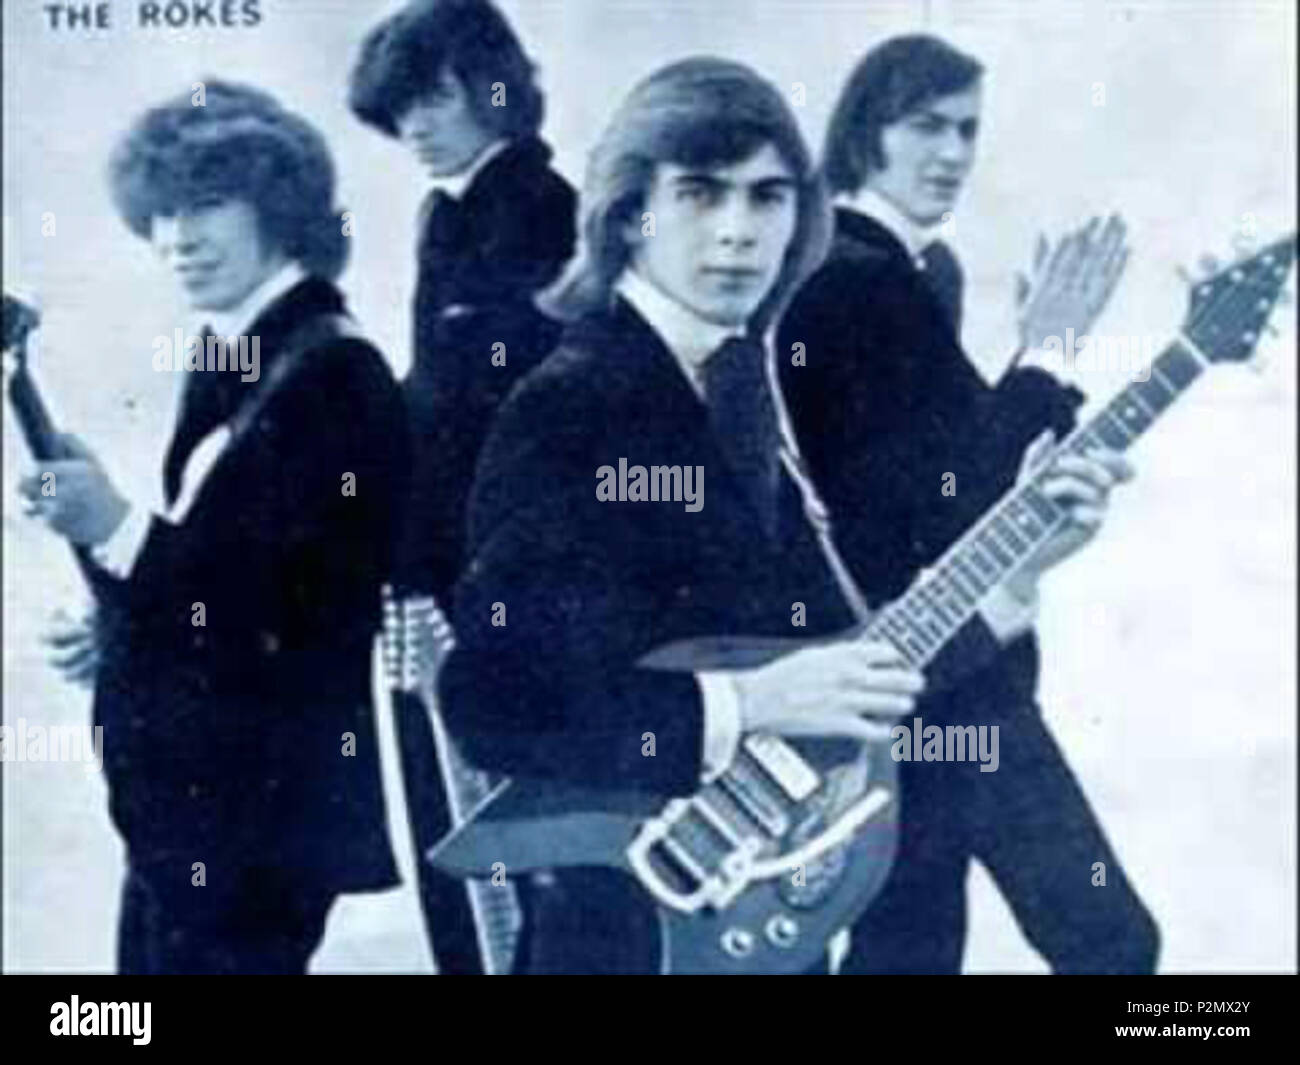 . Italiano: Il gruppo musicale Rokes . 24 de mayo de 2015. 77 Rokeseko desconocido Foto de stock